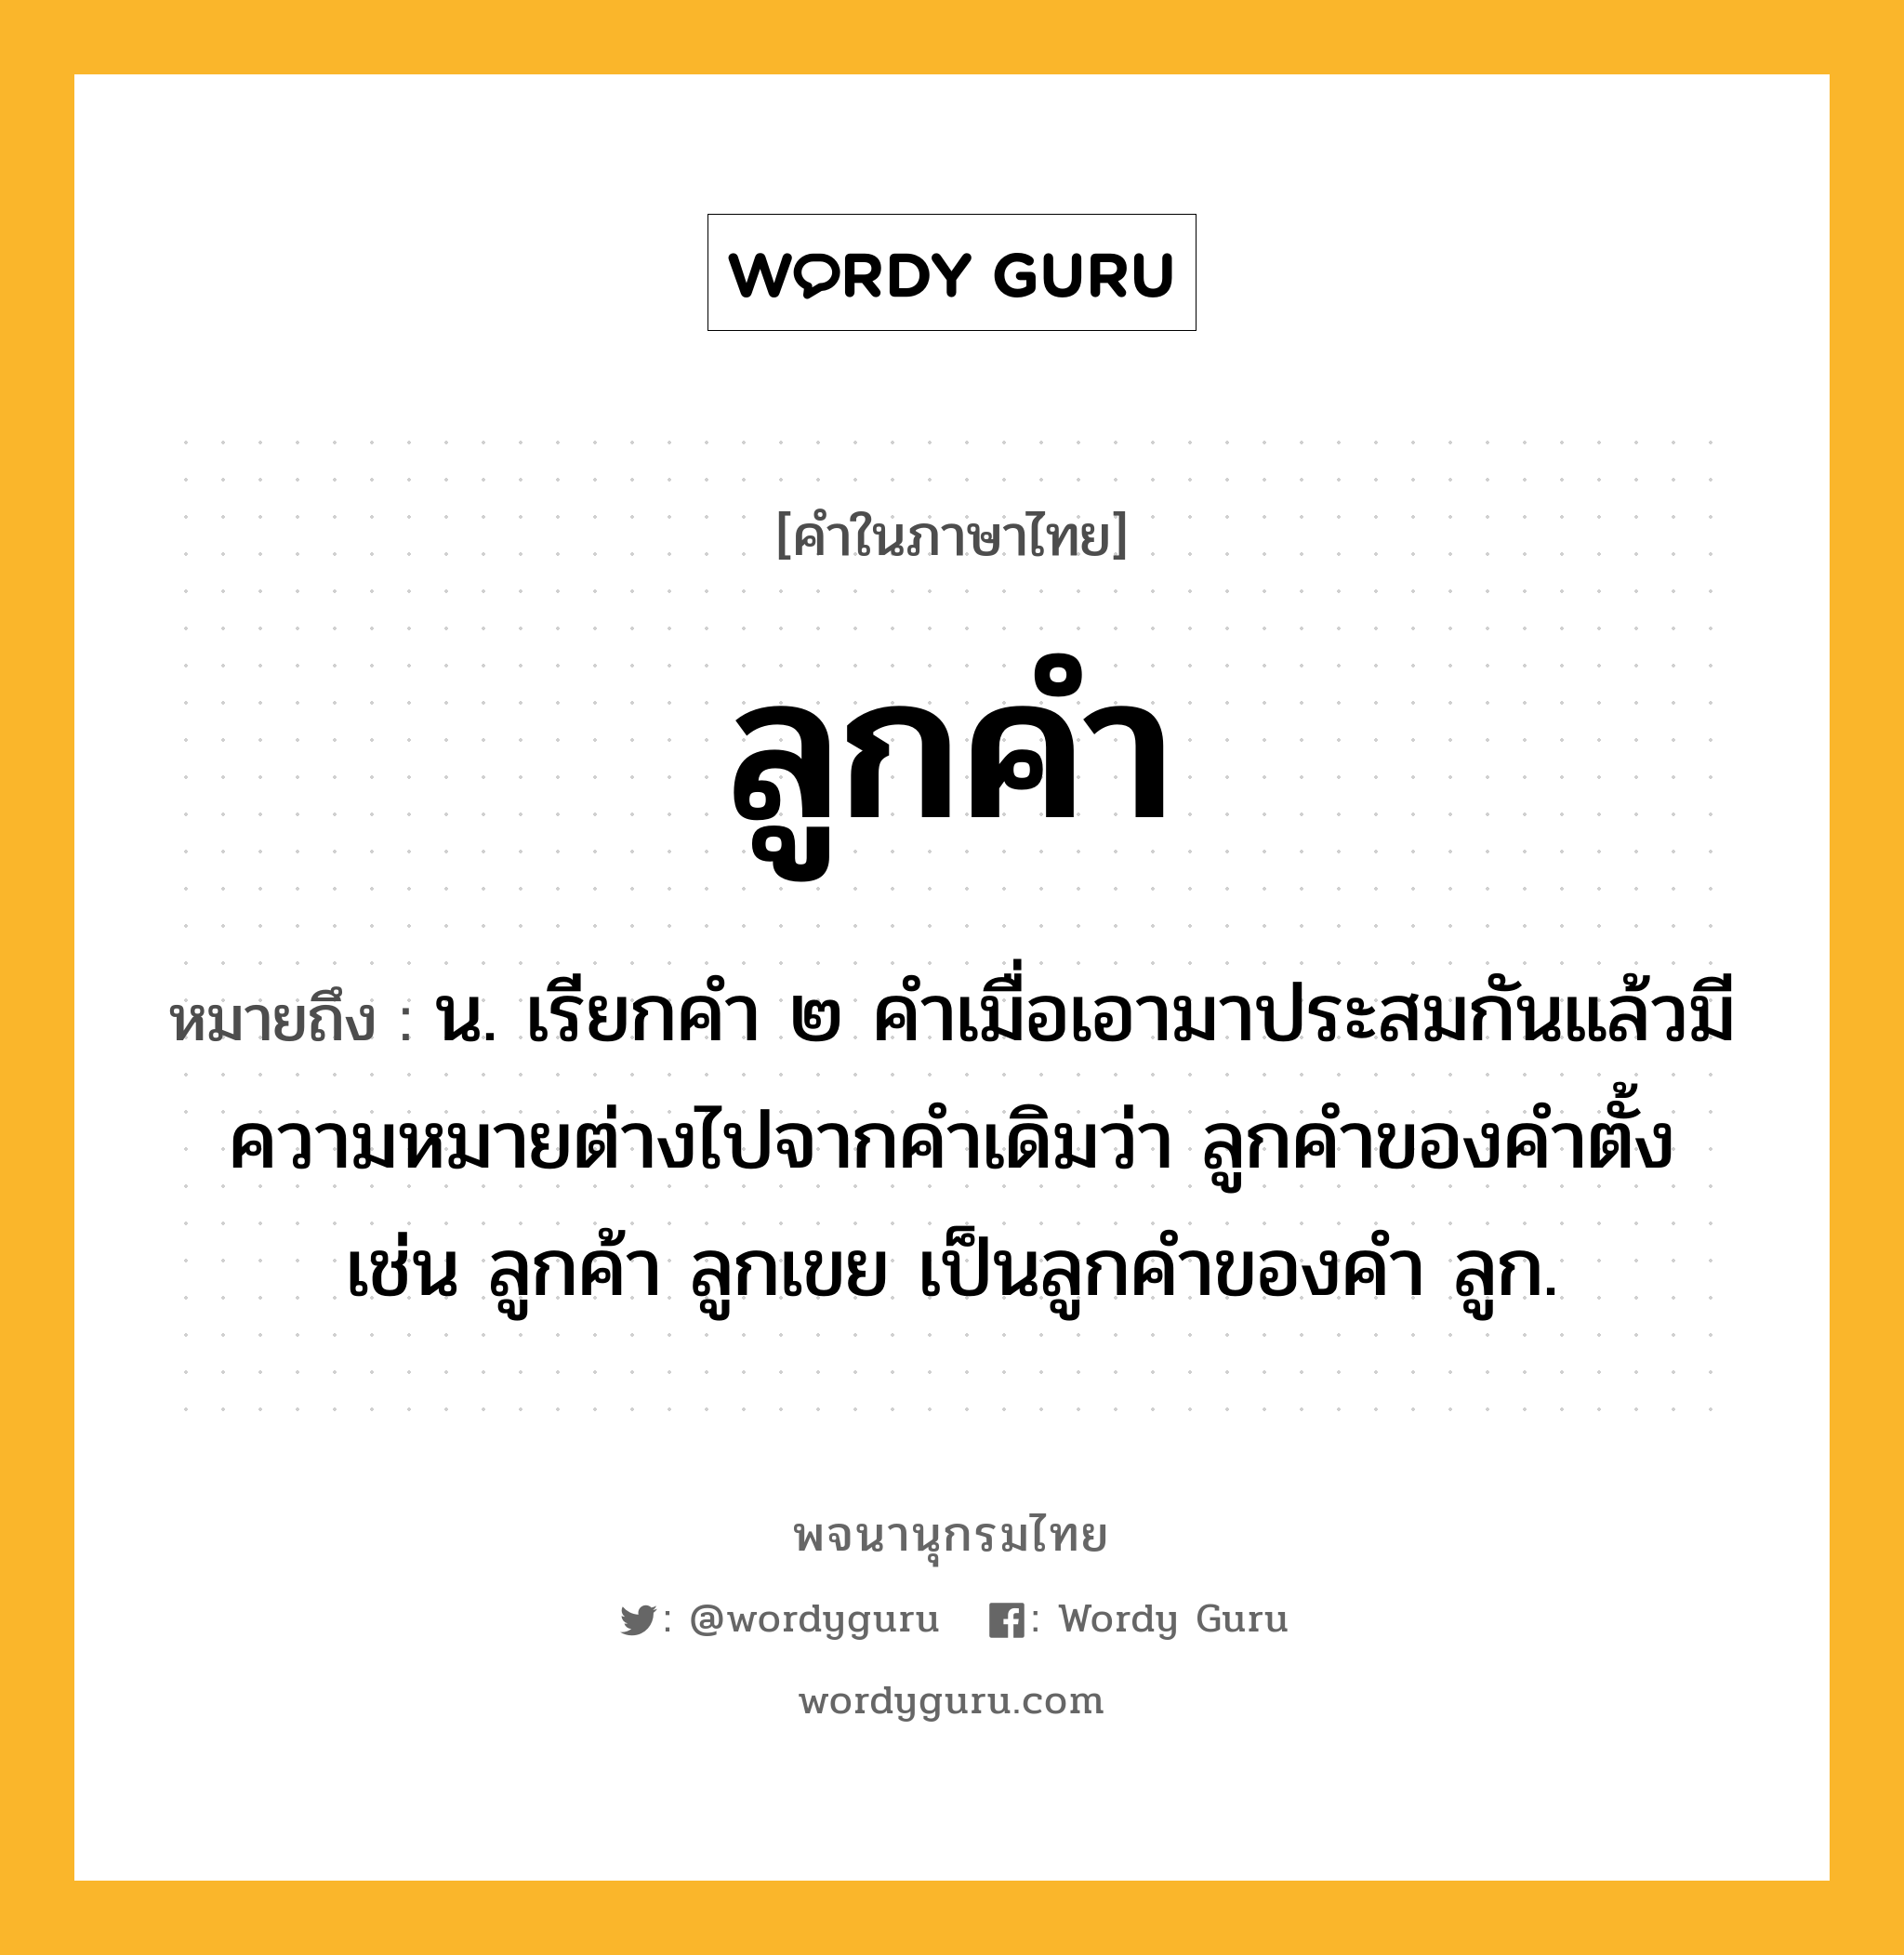 ลูกคำ ความหมาย หมายถึงอะไร?, คำในภาษาไทย ลูกคำ หมายถึง น. เรียกคํา ๒ คําเมื่อเอามาประสมกันแล้วมีความหมายต่างไปจากคําเดิมว่า ลูกคําของคําตั้ง เช่น ลูกค้า ลูกเขย เป็นลูกคําของคํา ลูก.